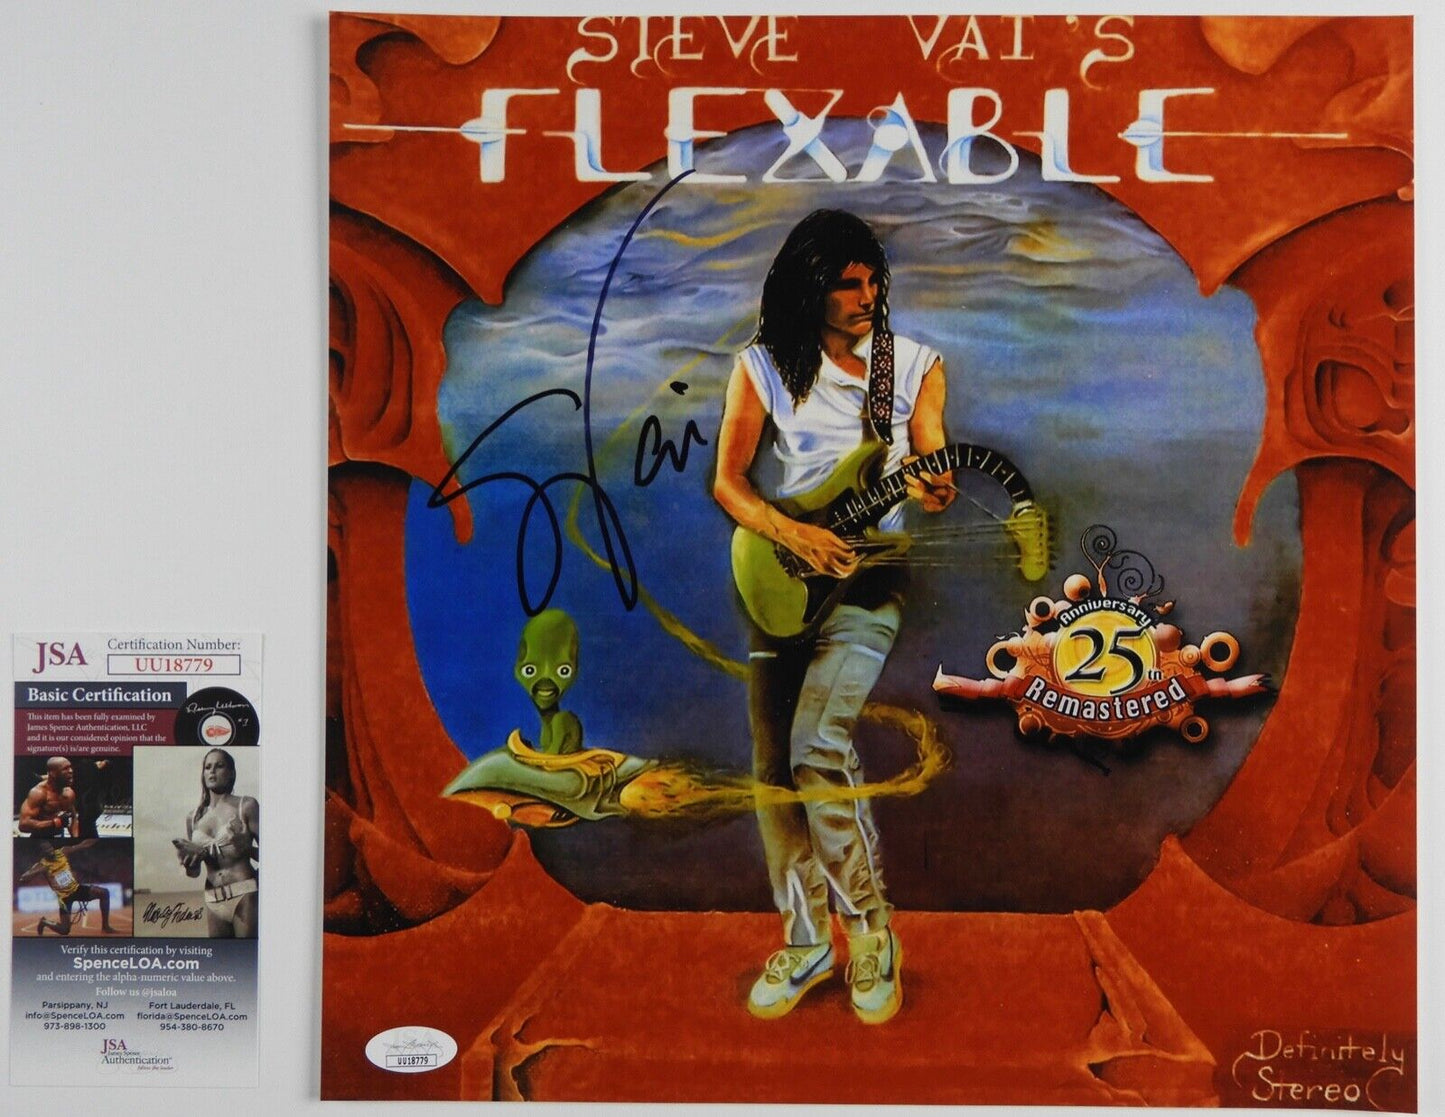 Steve Vai JSA Autograph Signed Album 12" Photo Flexable